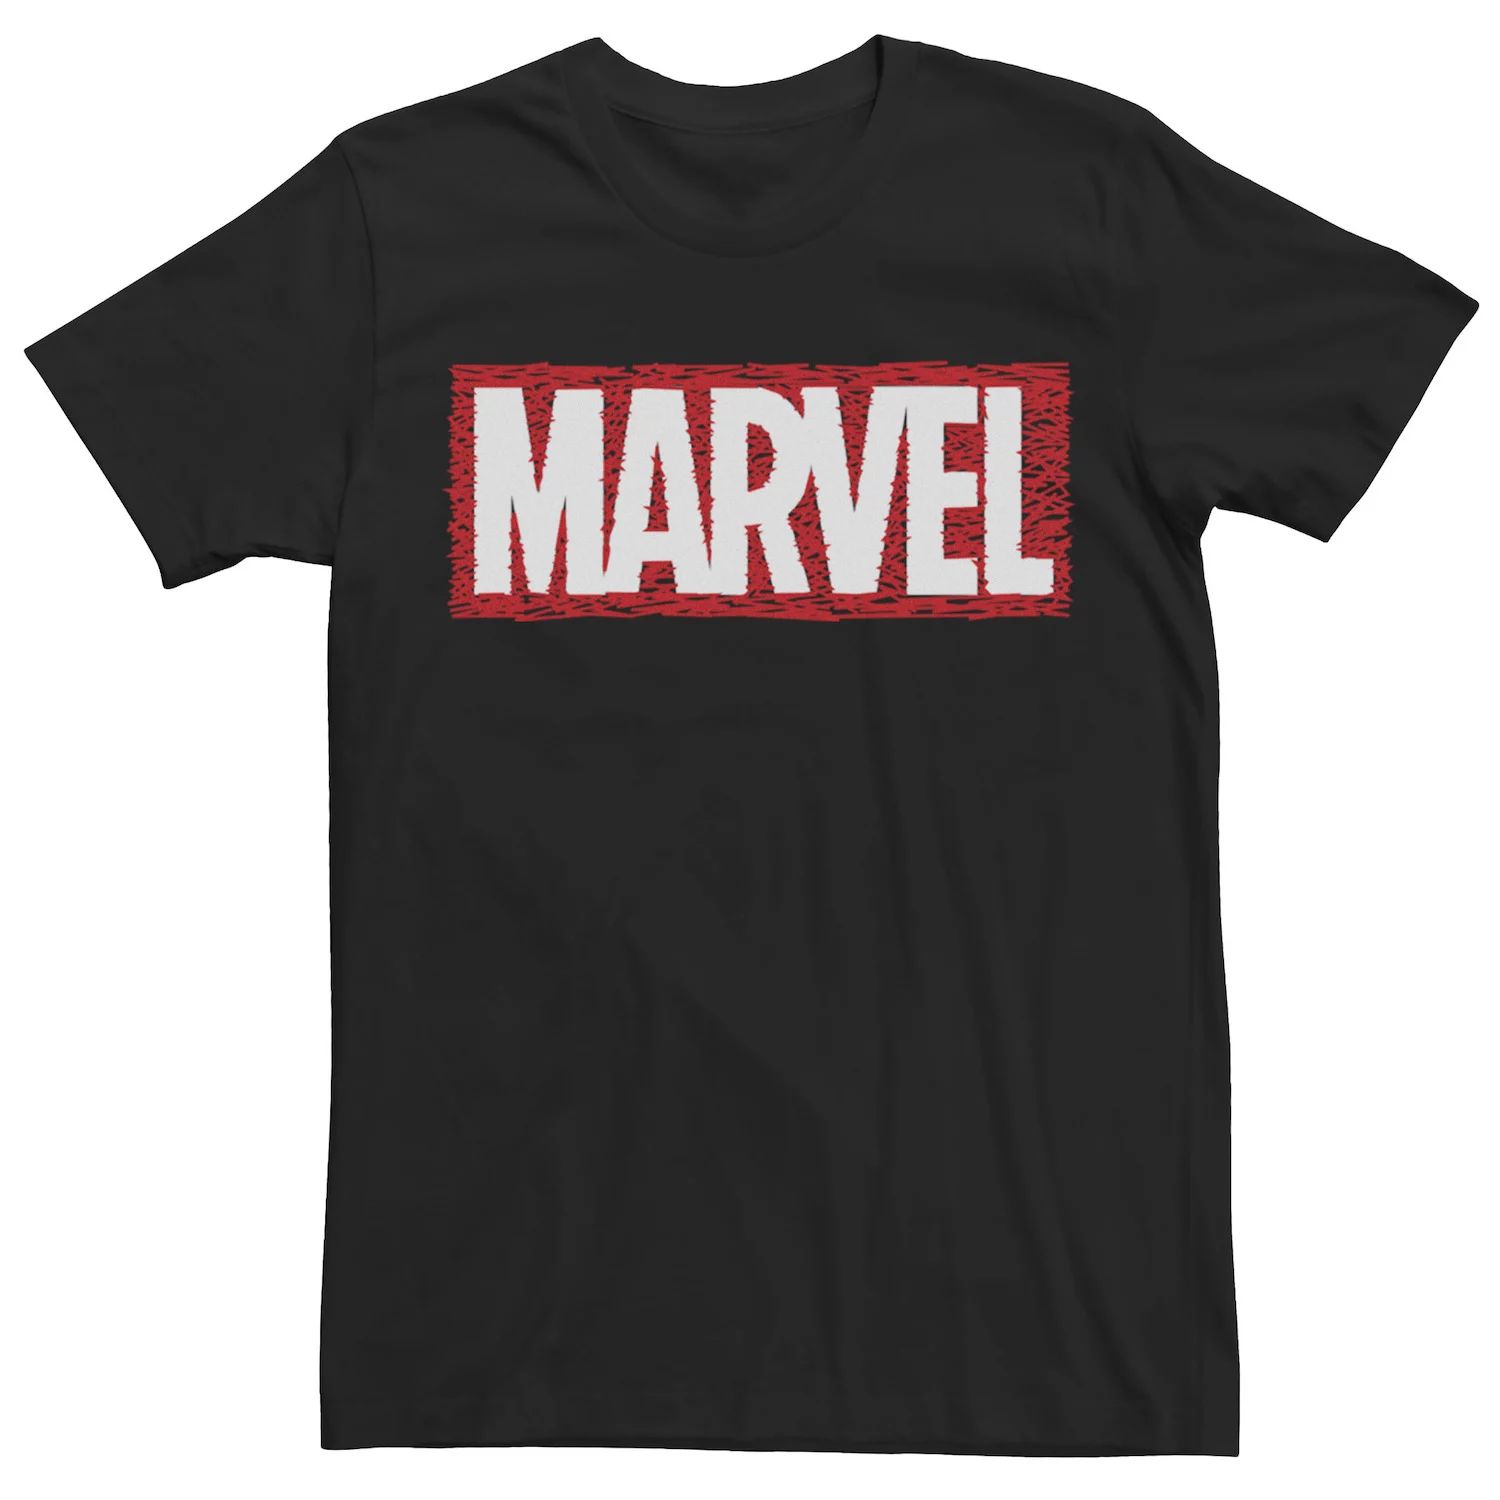 Мужская футболка с графическим логотипом и рисунком коробки Marvel